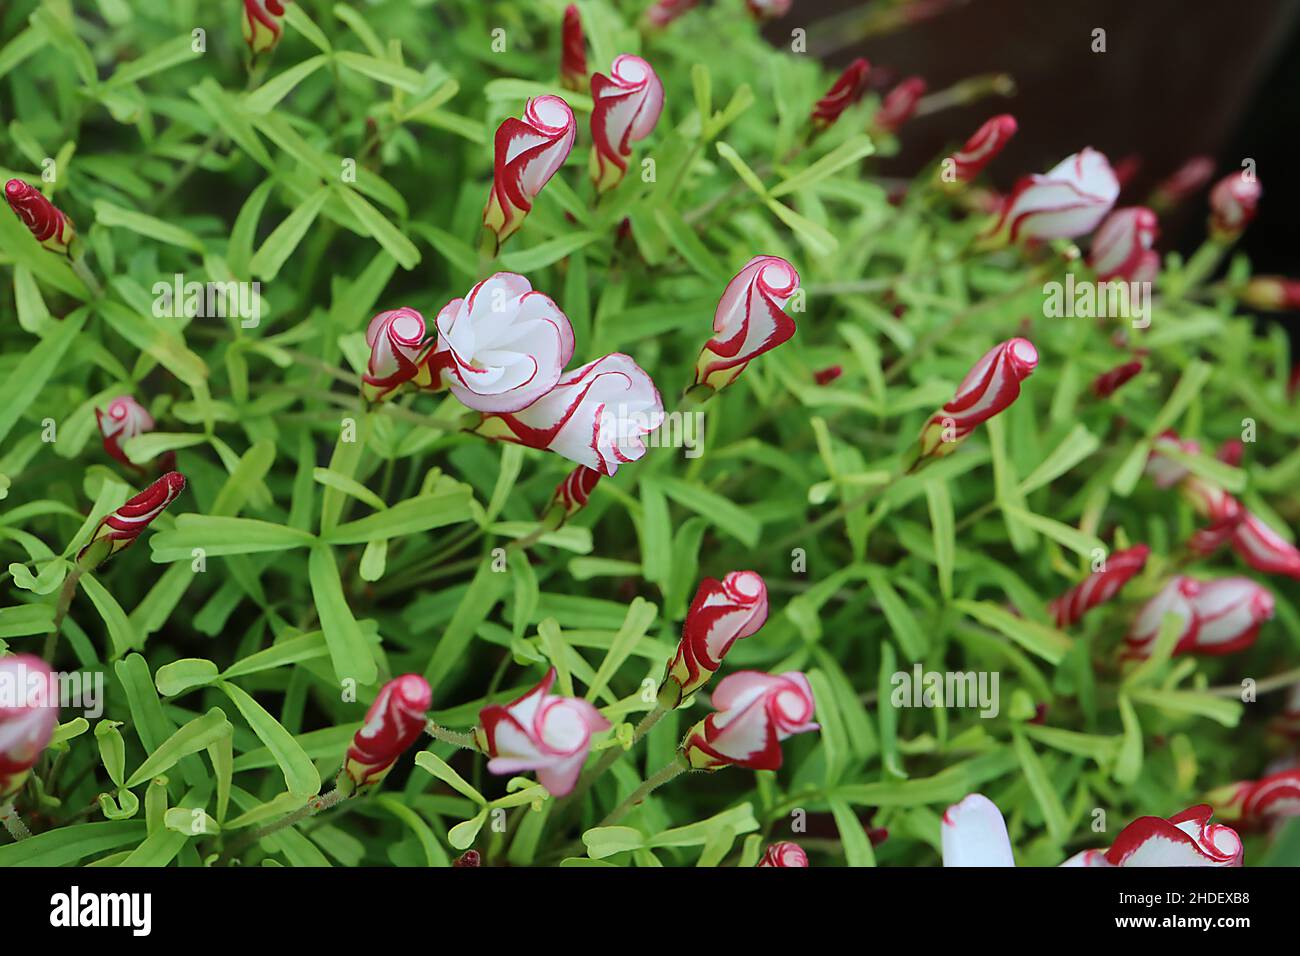 Oxalis versicolor azúcar de caña de caramelo - enrollado flores blancas tubulares con márgenes carmesí, foliolos verde brillante con muescas alargadas, enero, Inglaterra Foto de stock